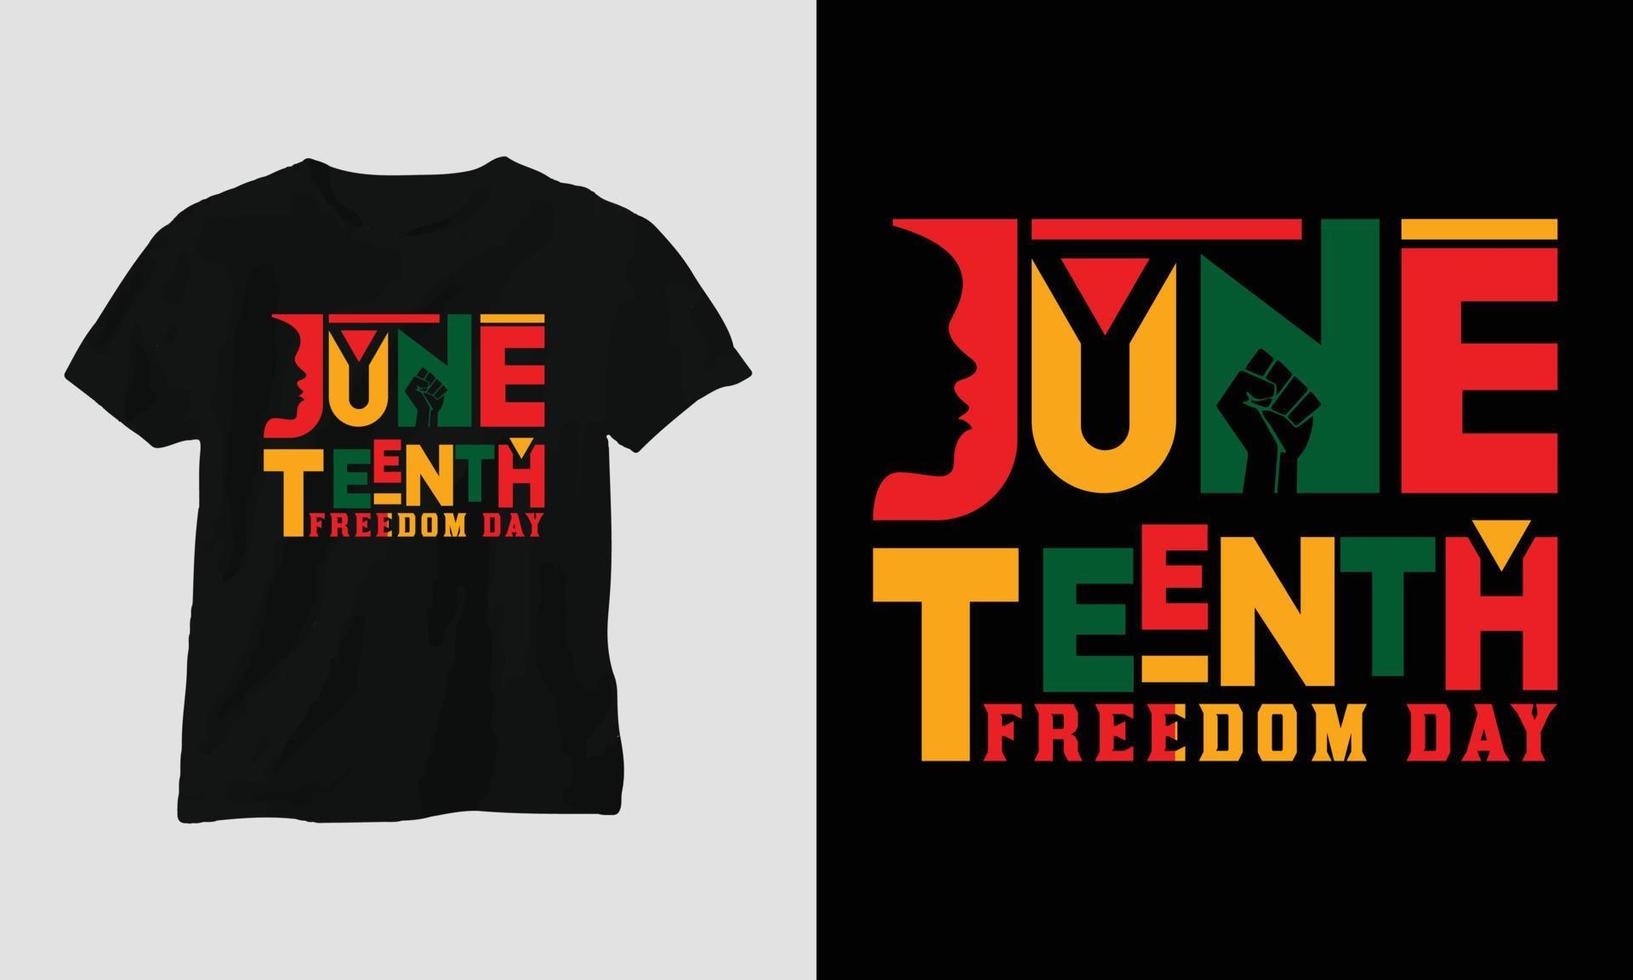 Juni zehnten Freiheit Tag T-Shirt und bekleidung Design. Vektor drucken, Typografie, Poster, Emblem, Festival